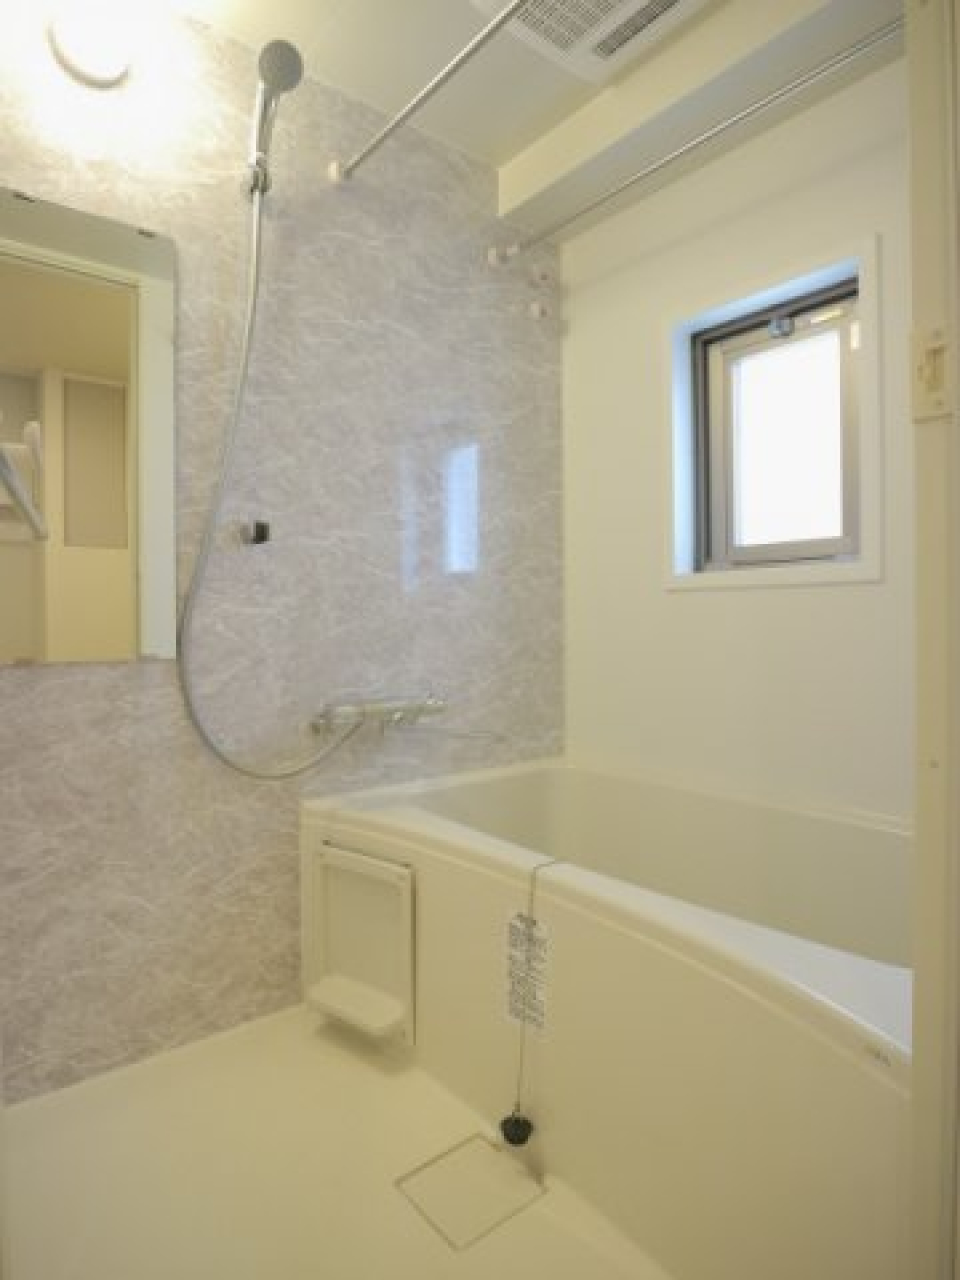 シンプルな浴室の様子。